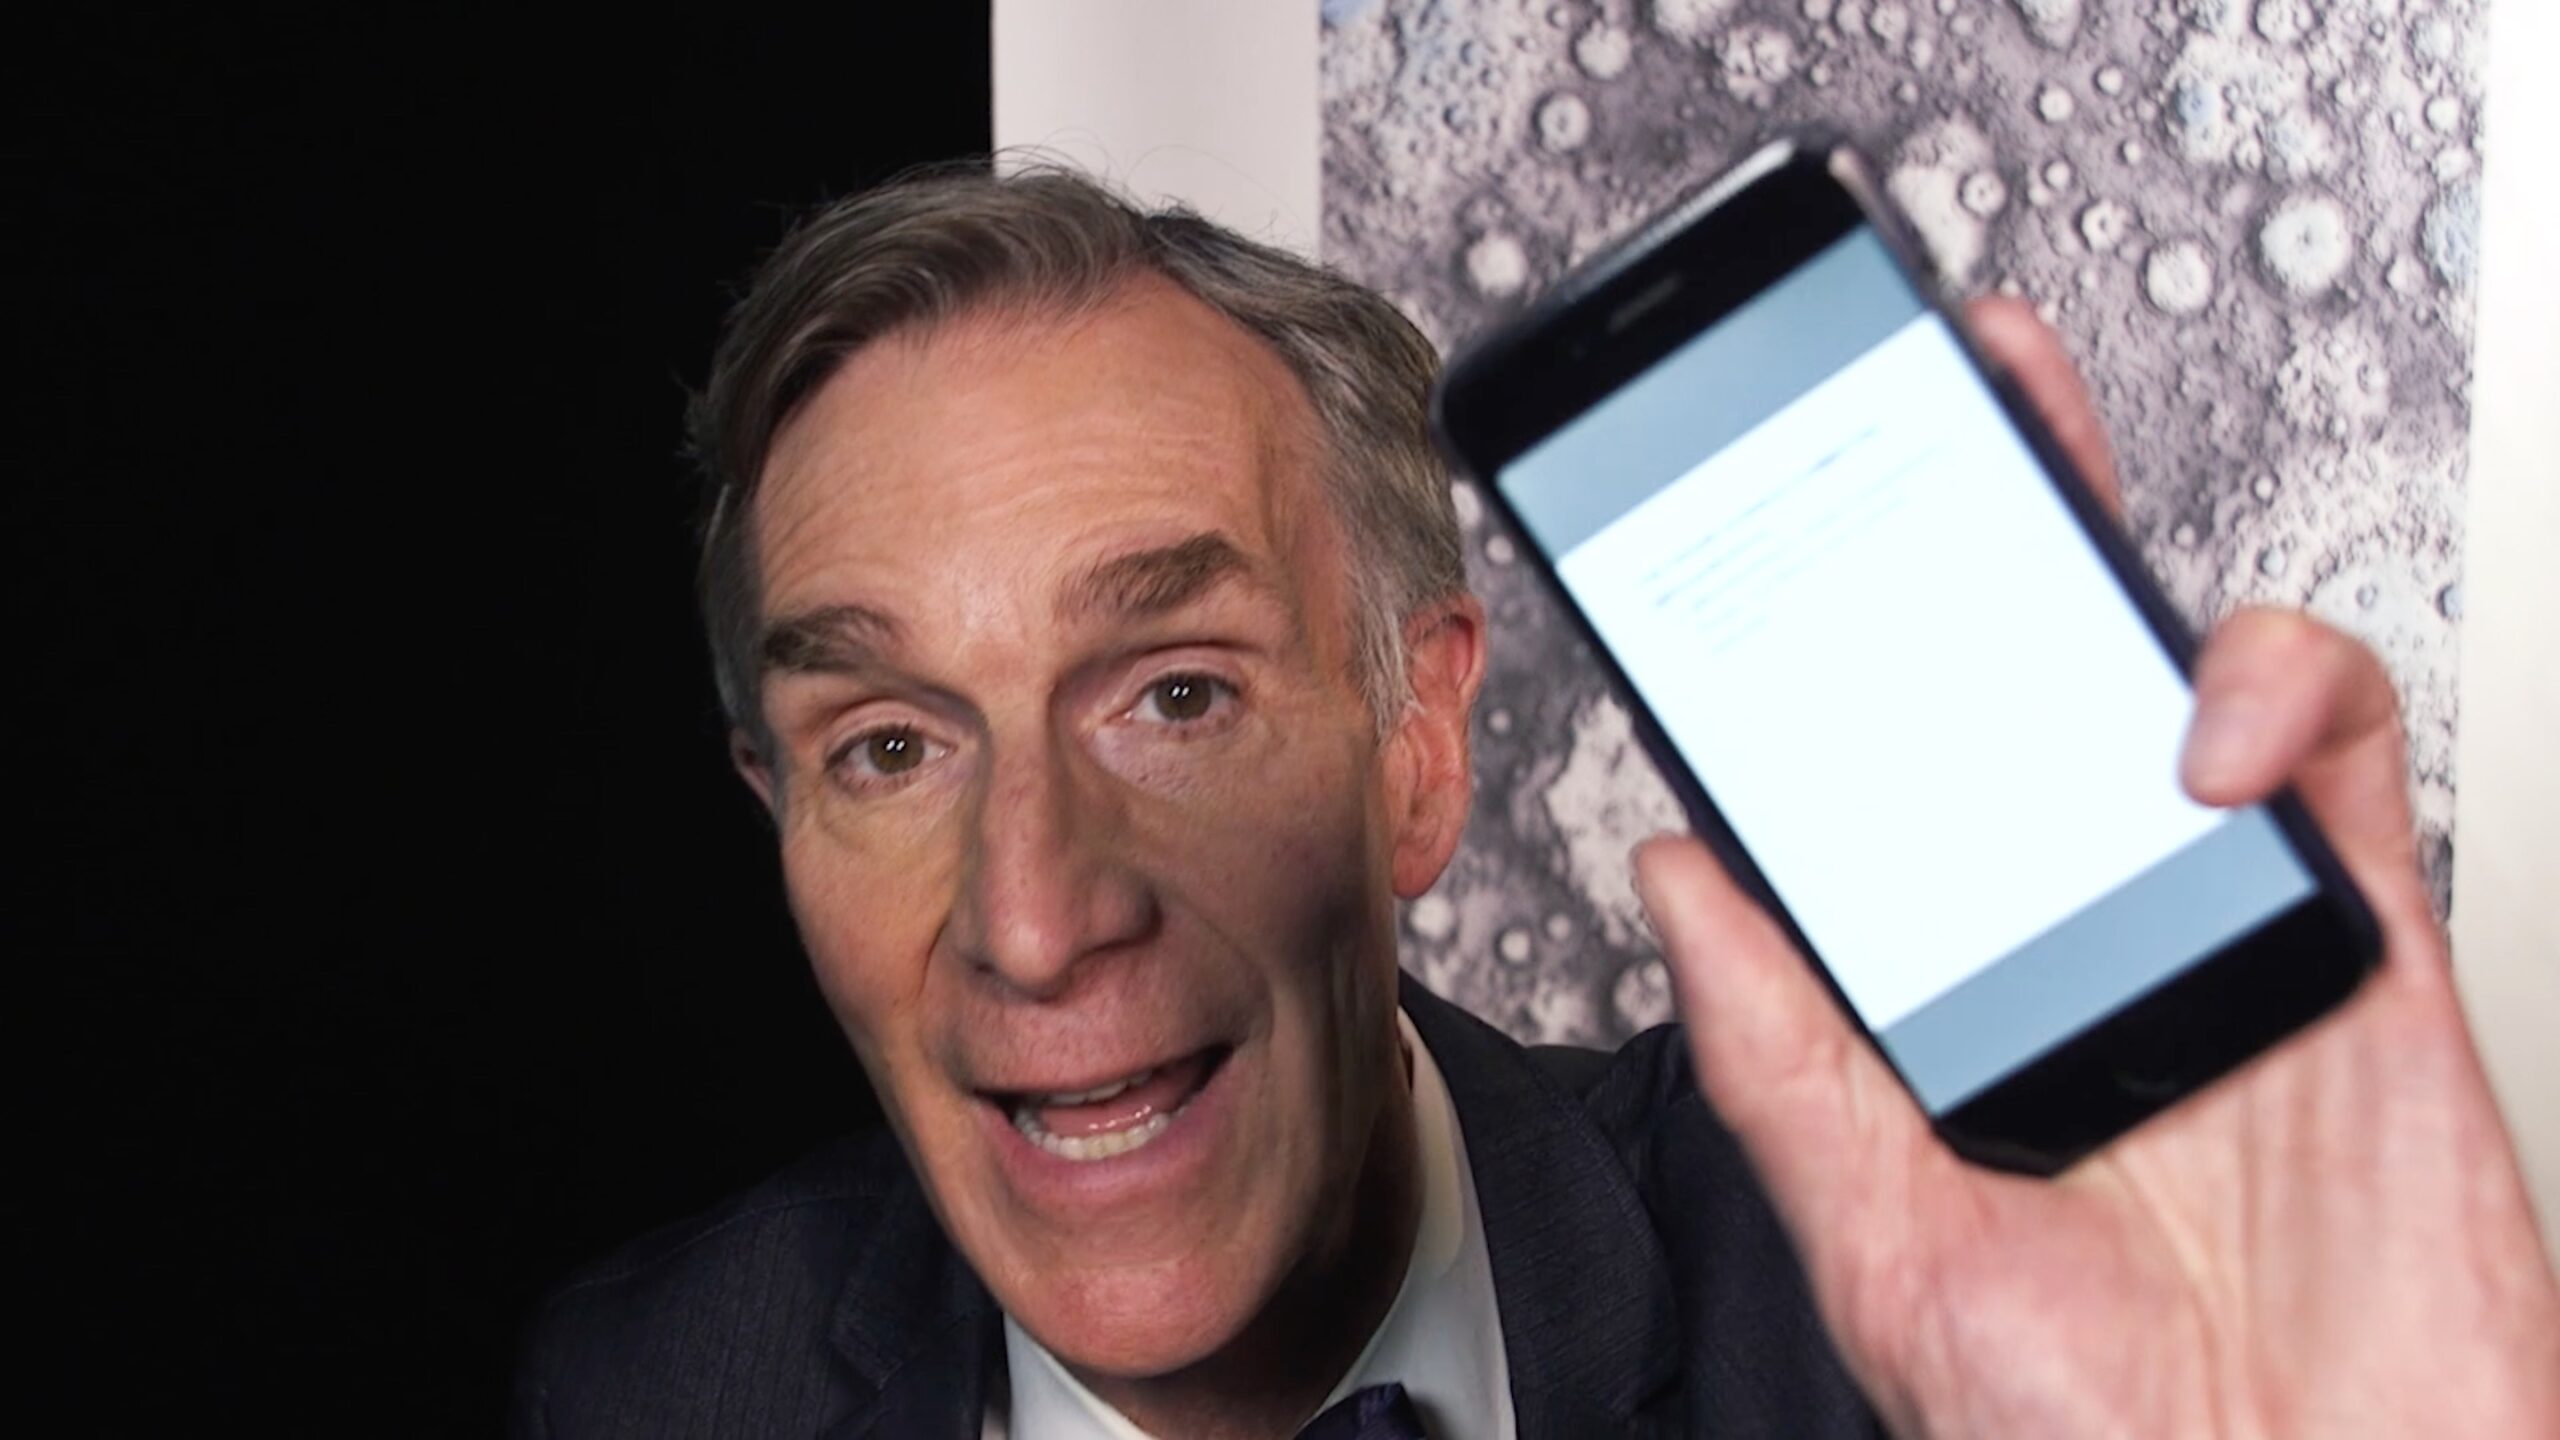 Bill Nye holding a phone